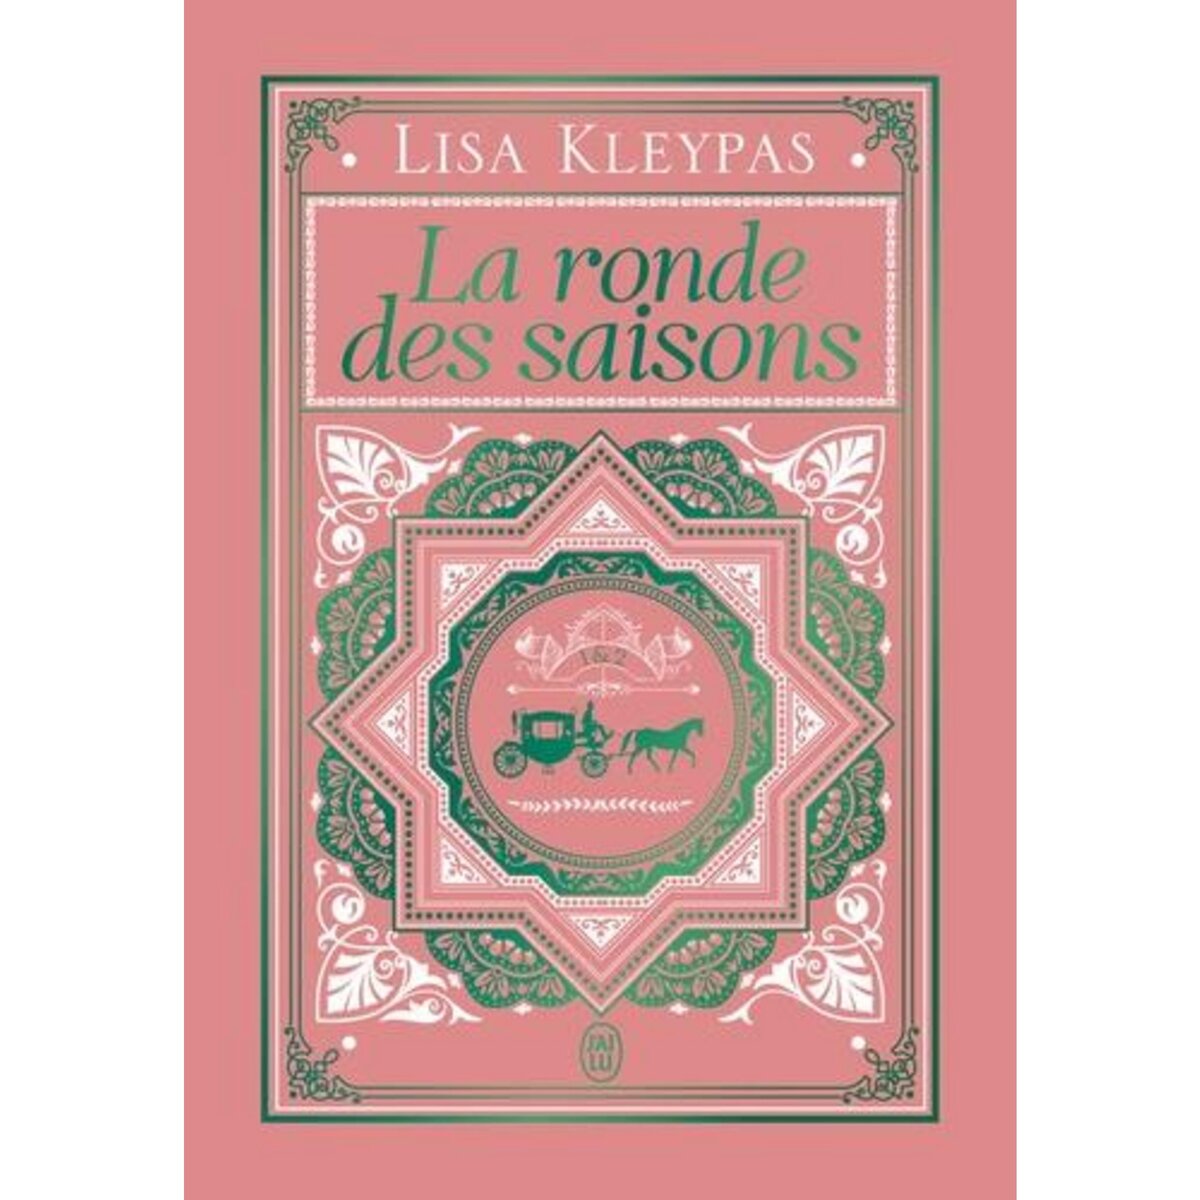  LA RONDE DES SAISONS TOMES 1 & 2  , Kleypas Lisa